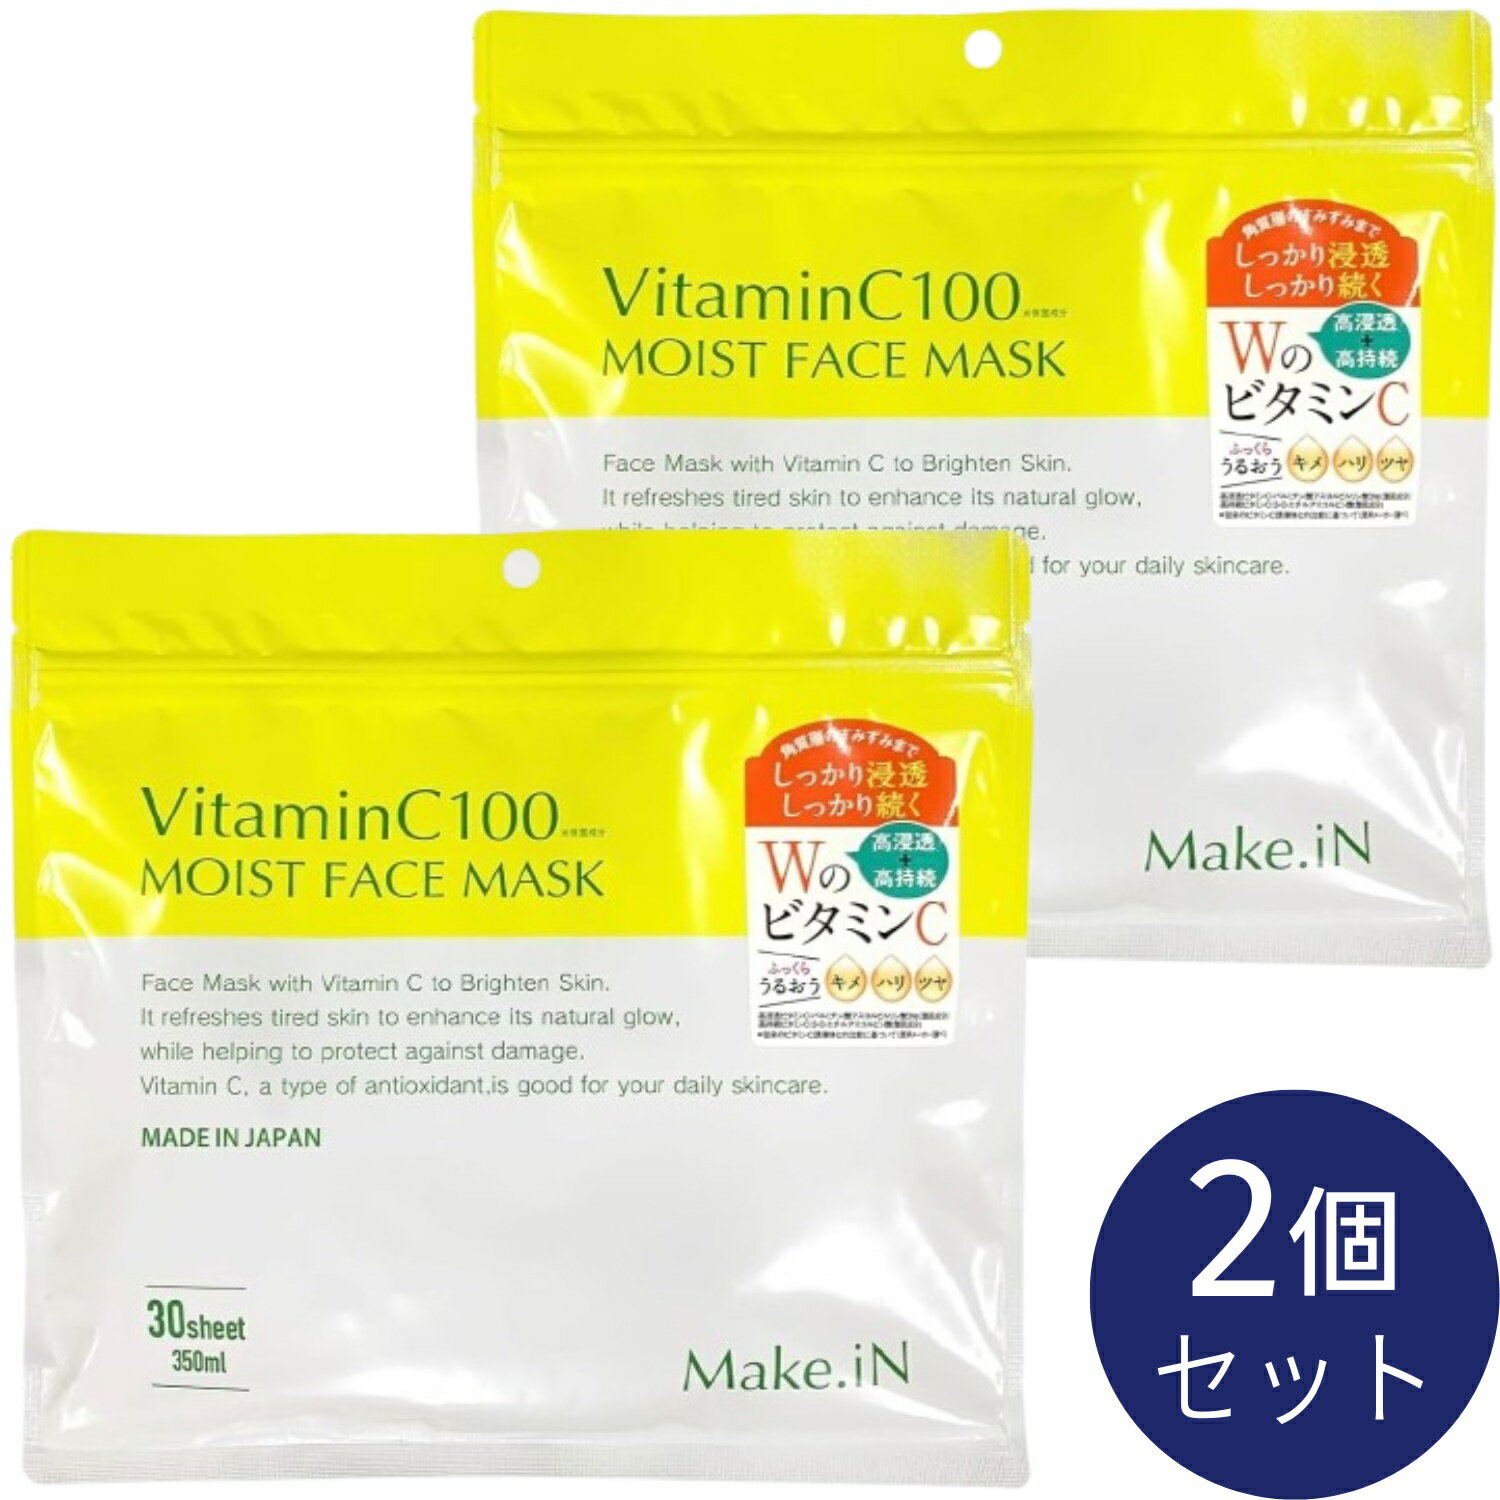 ビタミンC100 モイストフェイスマスク 30枚入 Make.iN VitaminC100 MOIST FACE MASK パック シートマスク 日本製 美容成分 キメ ハリ ツヤ VC100